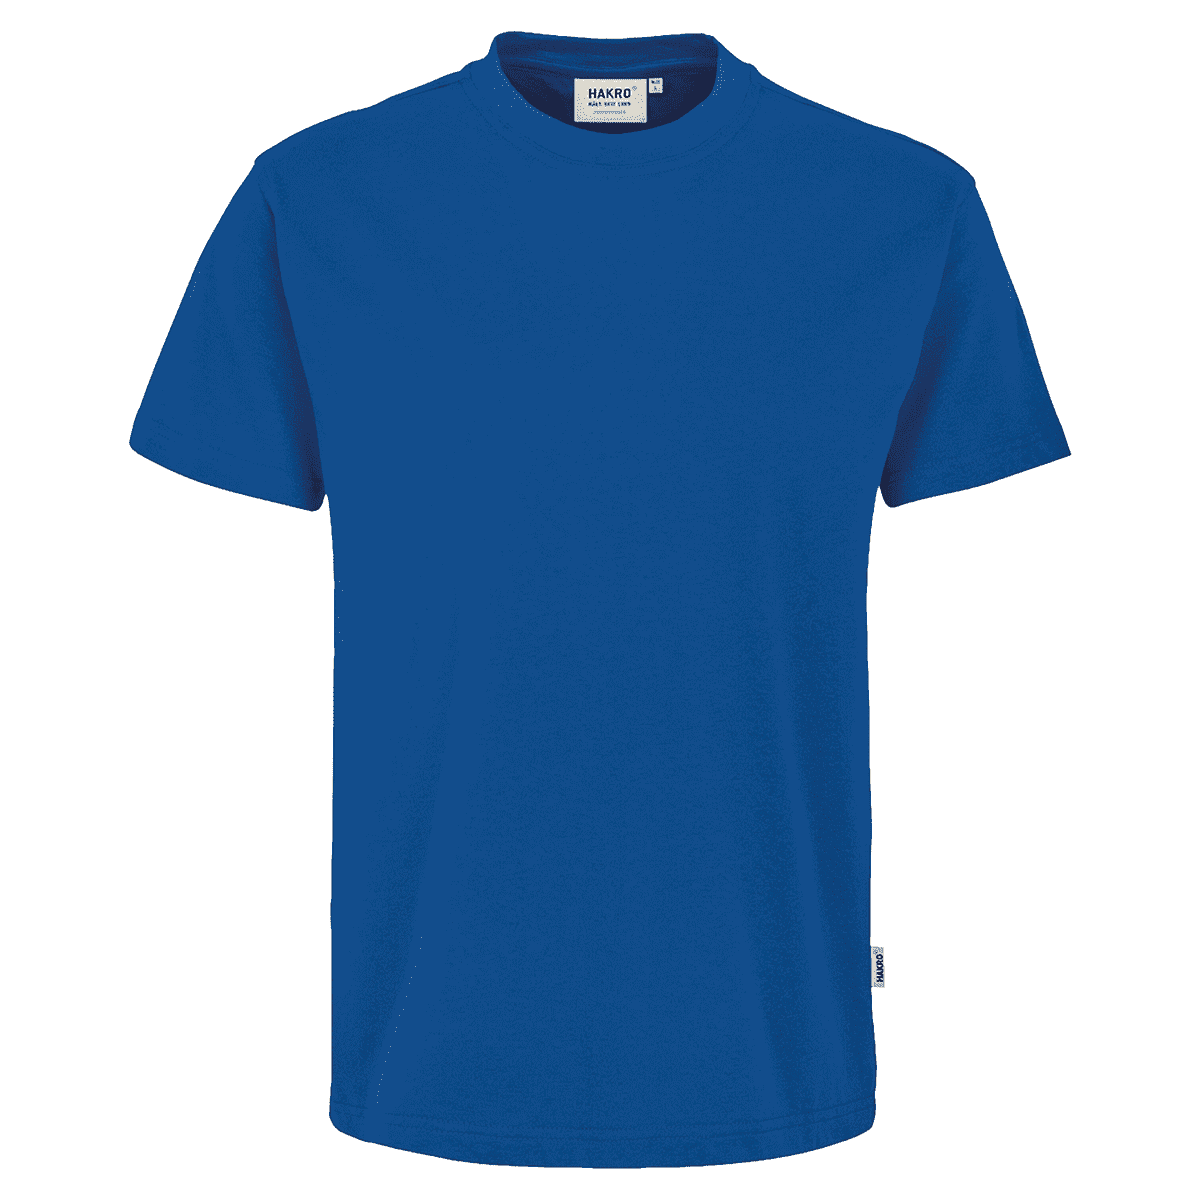 HAKRO T-Shirt Mikralinar royalblau, Größe S